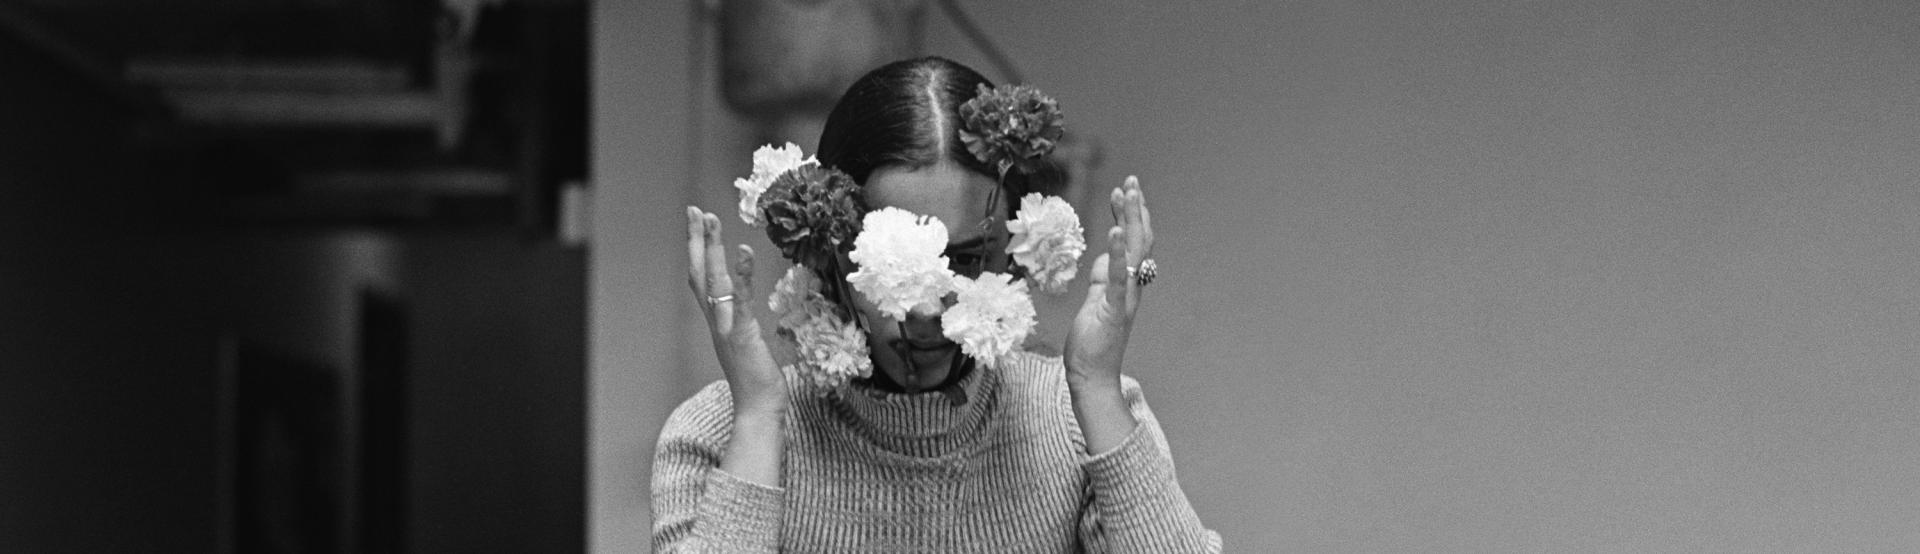 Ana Mendieta tient des fleurs devant son visage